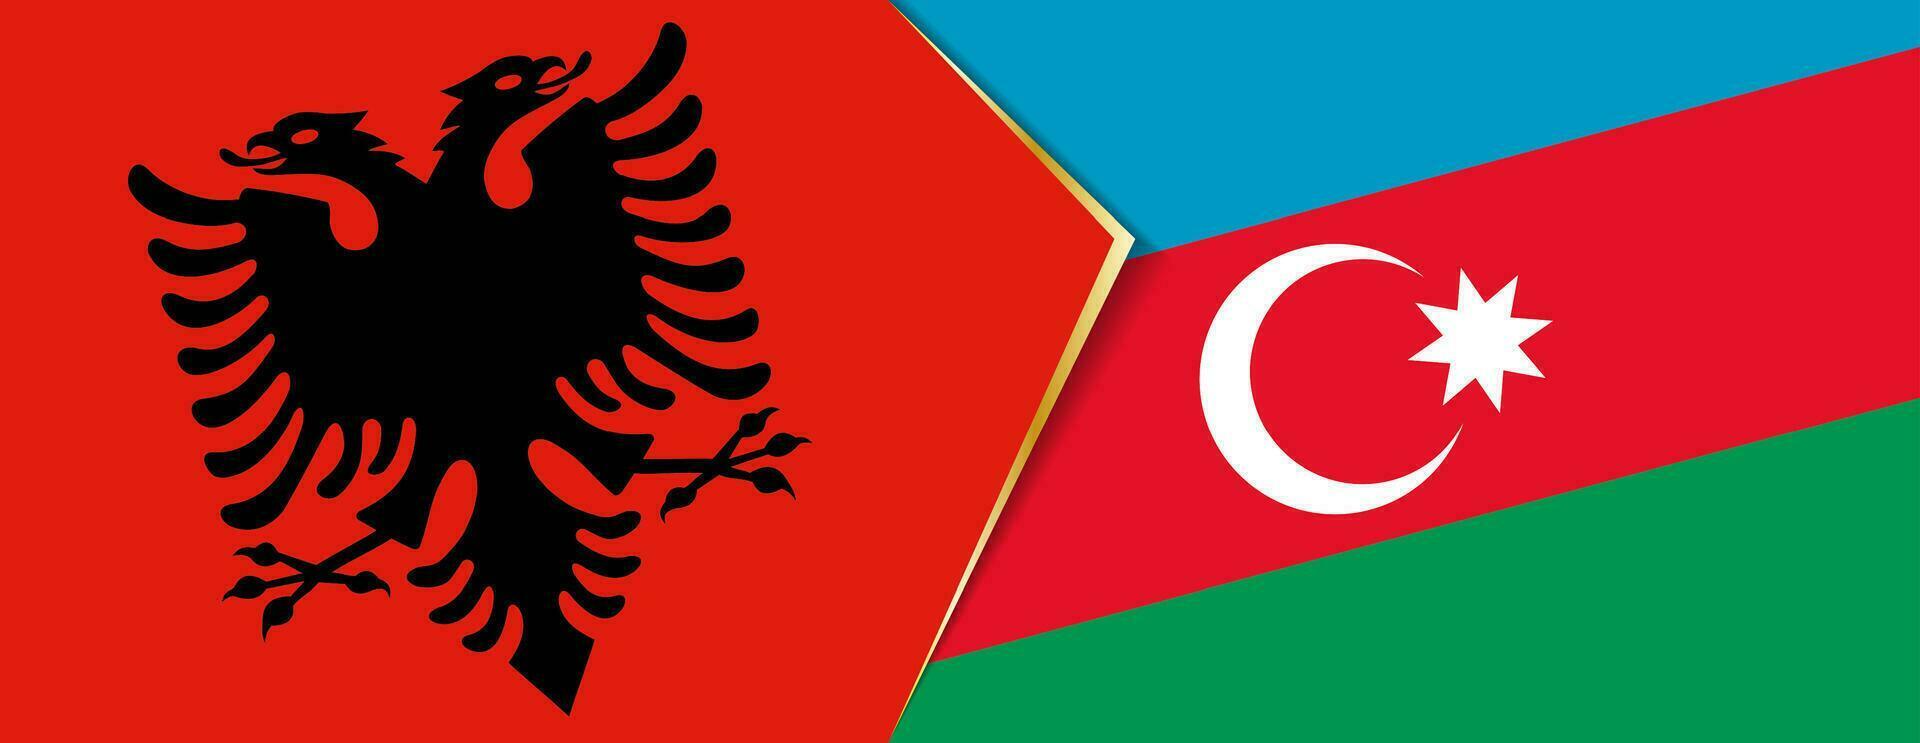 Albania y azerbaiyán banderas, dos vector banderas